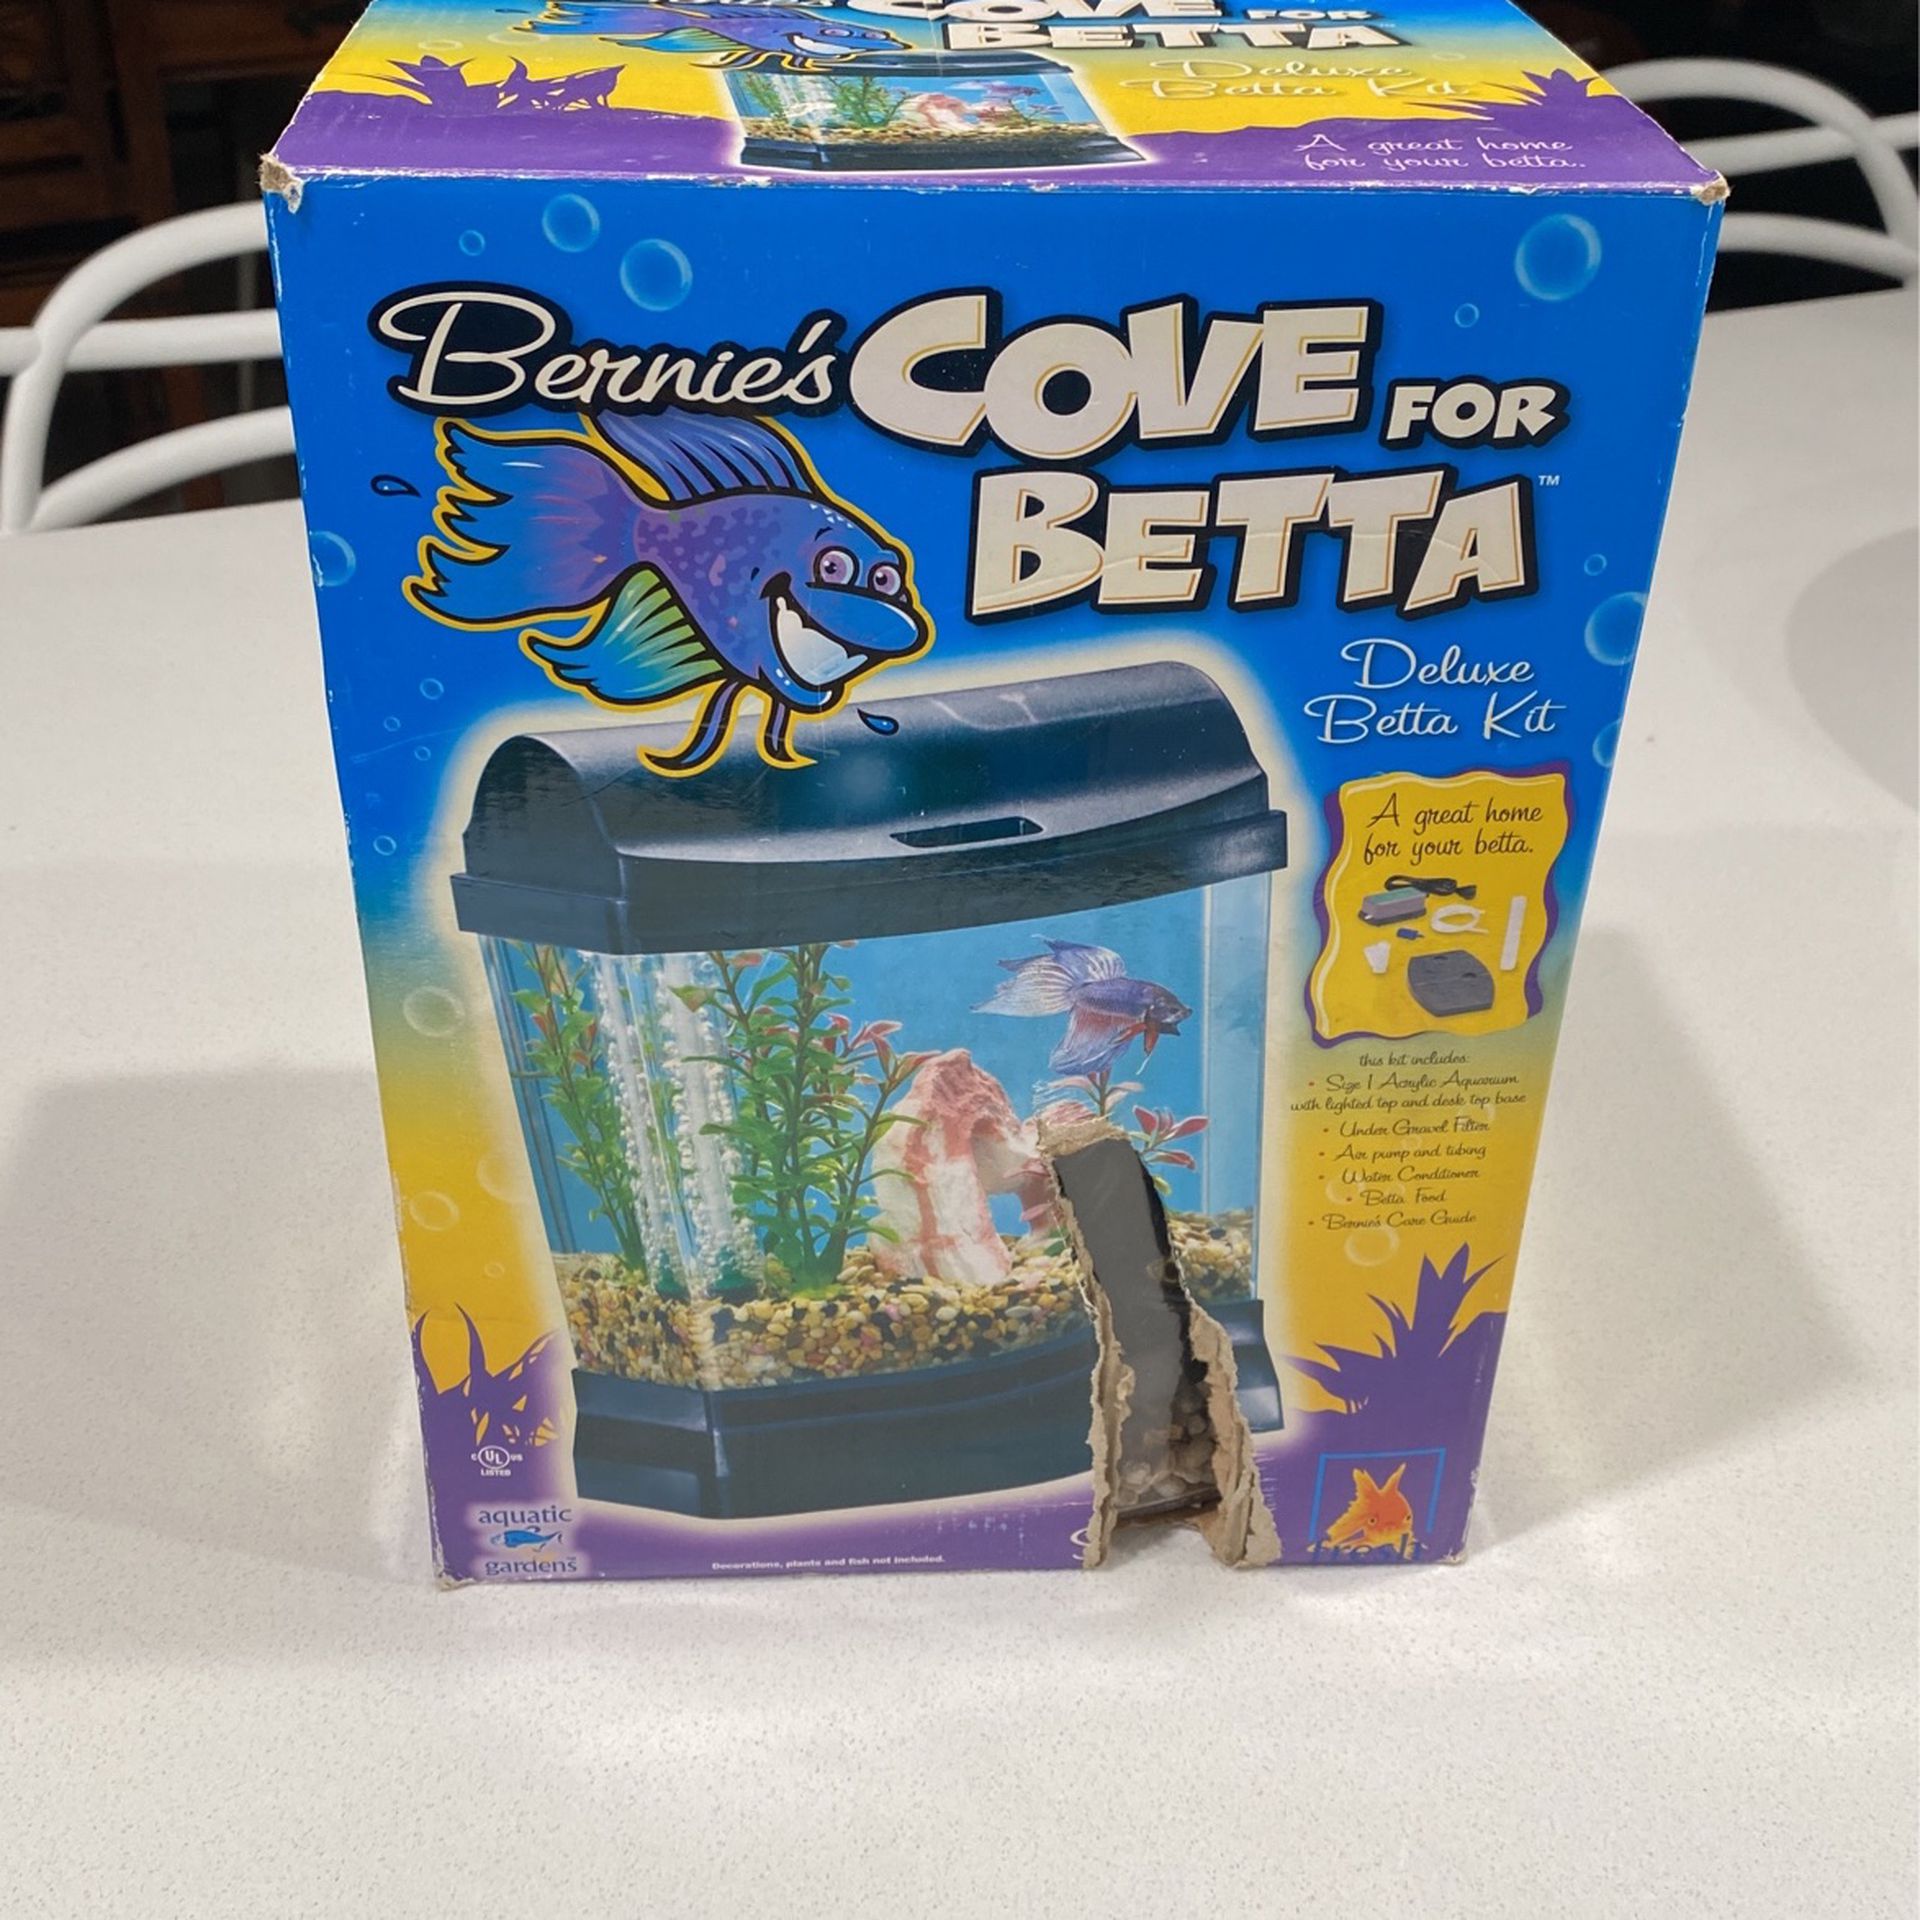 Cove For Betta